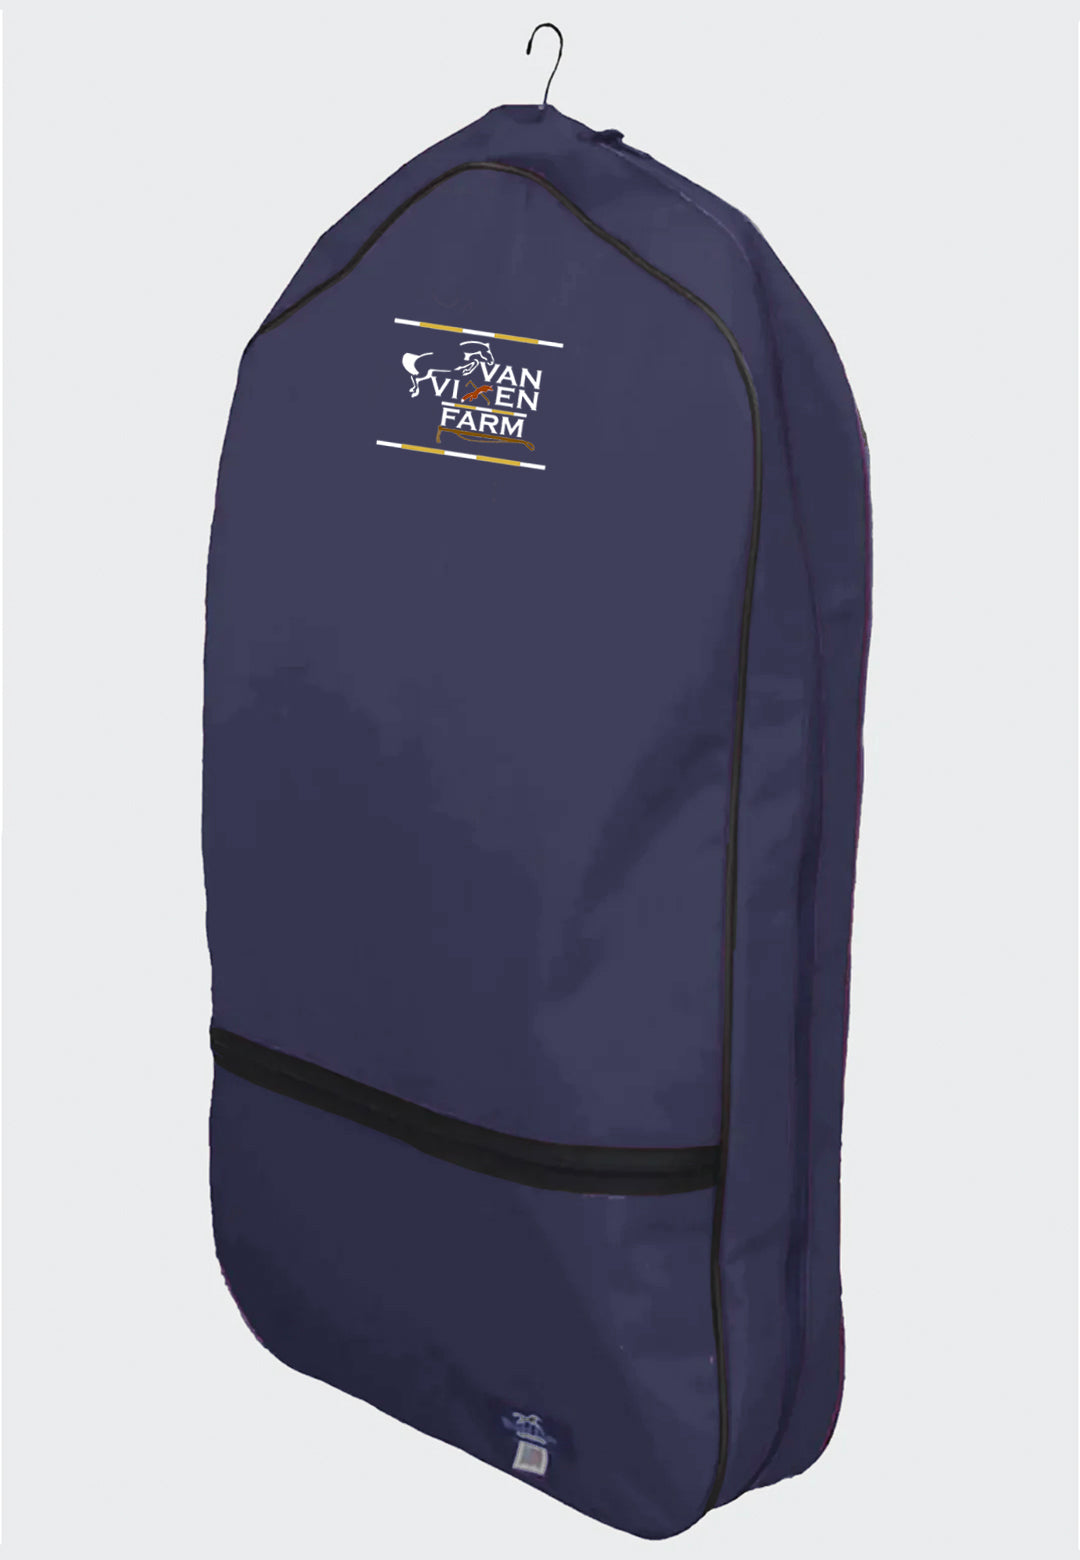 Van vixen farm World Class Equine Black Garment Bag - Original and XL